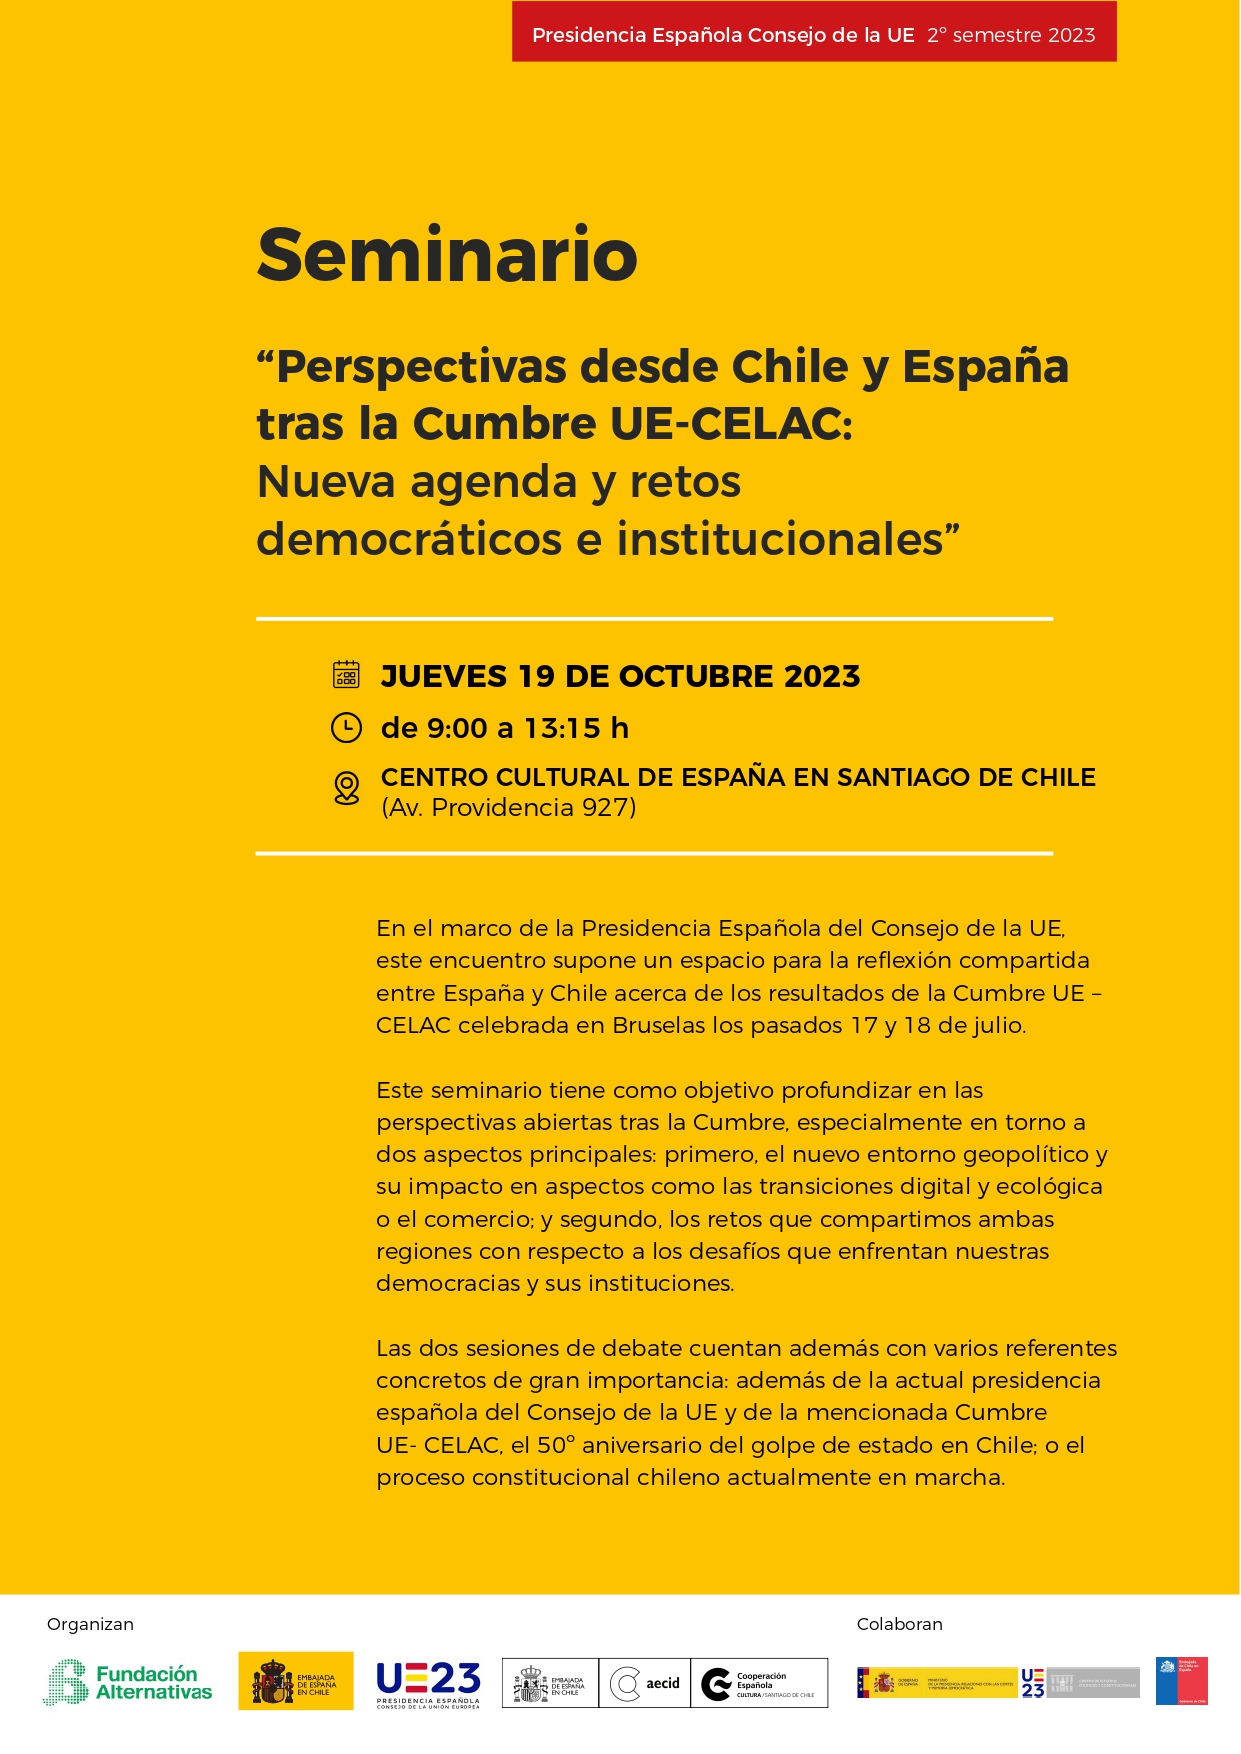 El CEPC colabora en el Seminario “Perspectivas desde Chile y España tras la Cumbre UE-CELAC: Nueva agenda y retos democráticos e institucionales” (Santiago de Chile, 19 de octubre de 2023)